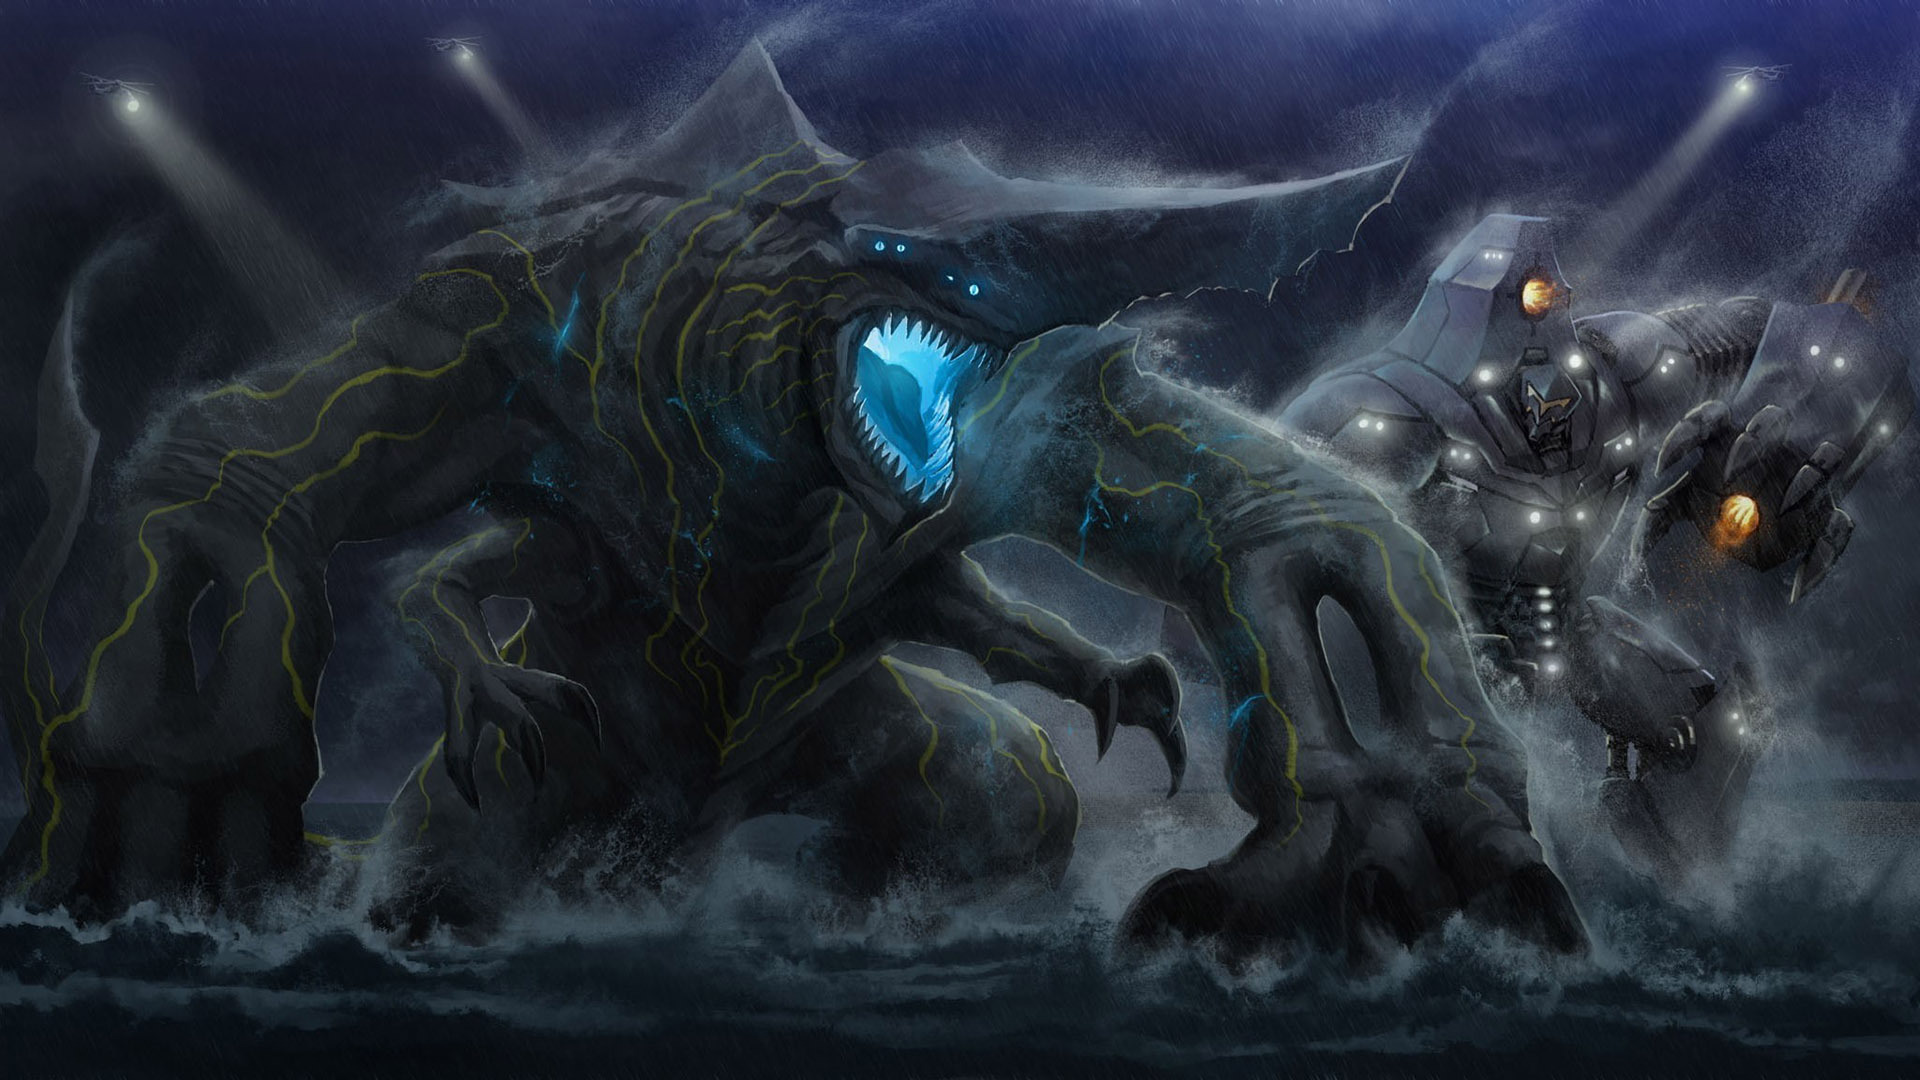 kaiju wallpaper,cg artwork,oscuridad,agua,demonio,personaje de ficción